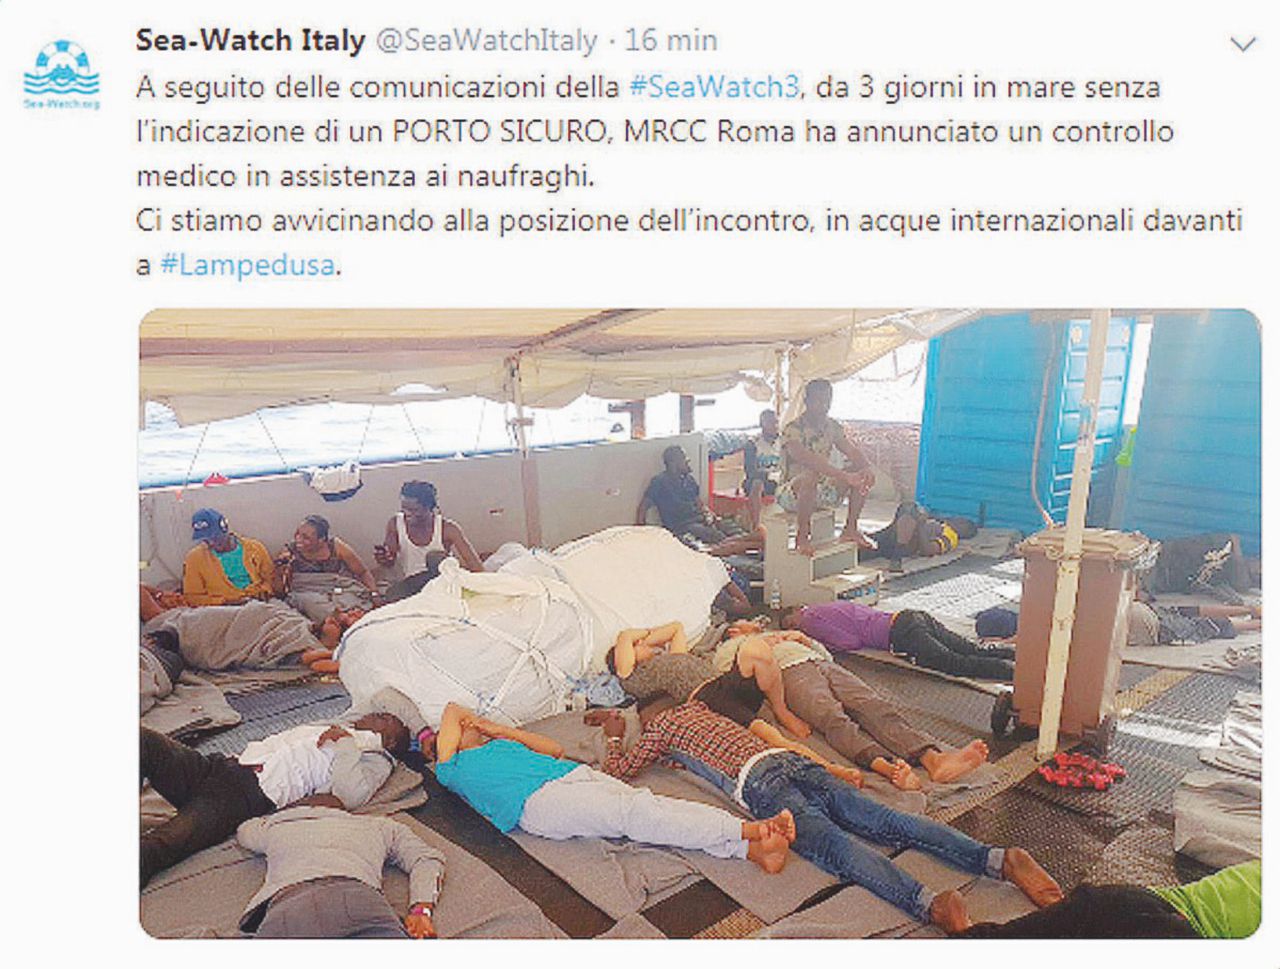 Copertina di Salvini ferma in mare la nave con l’accordo dei ministri 5S